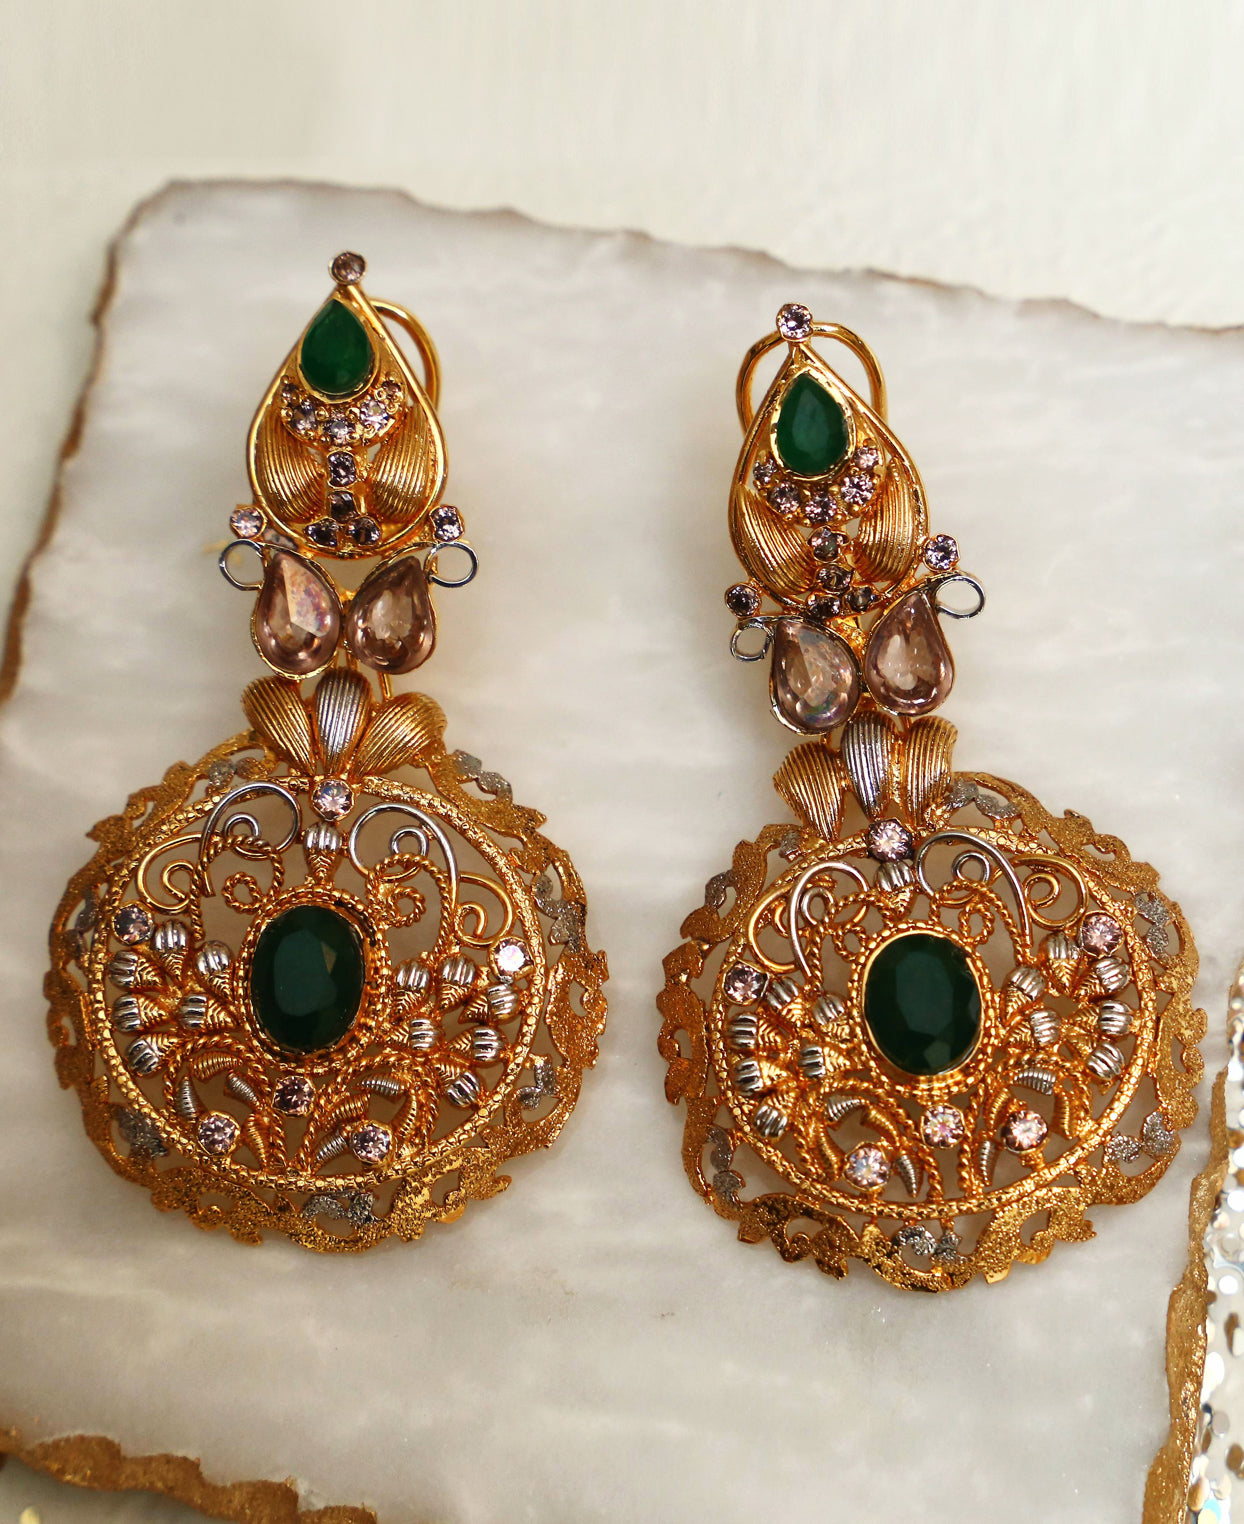 Green twisted wire earrings